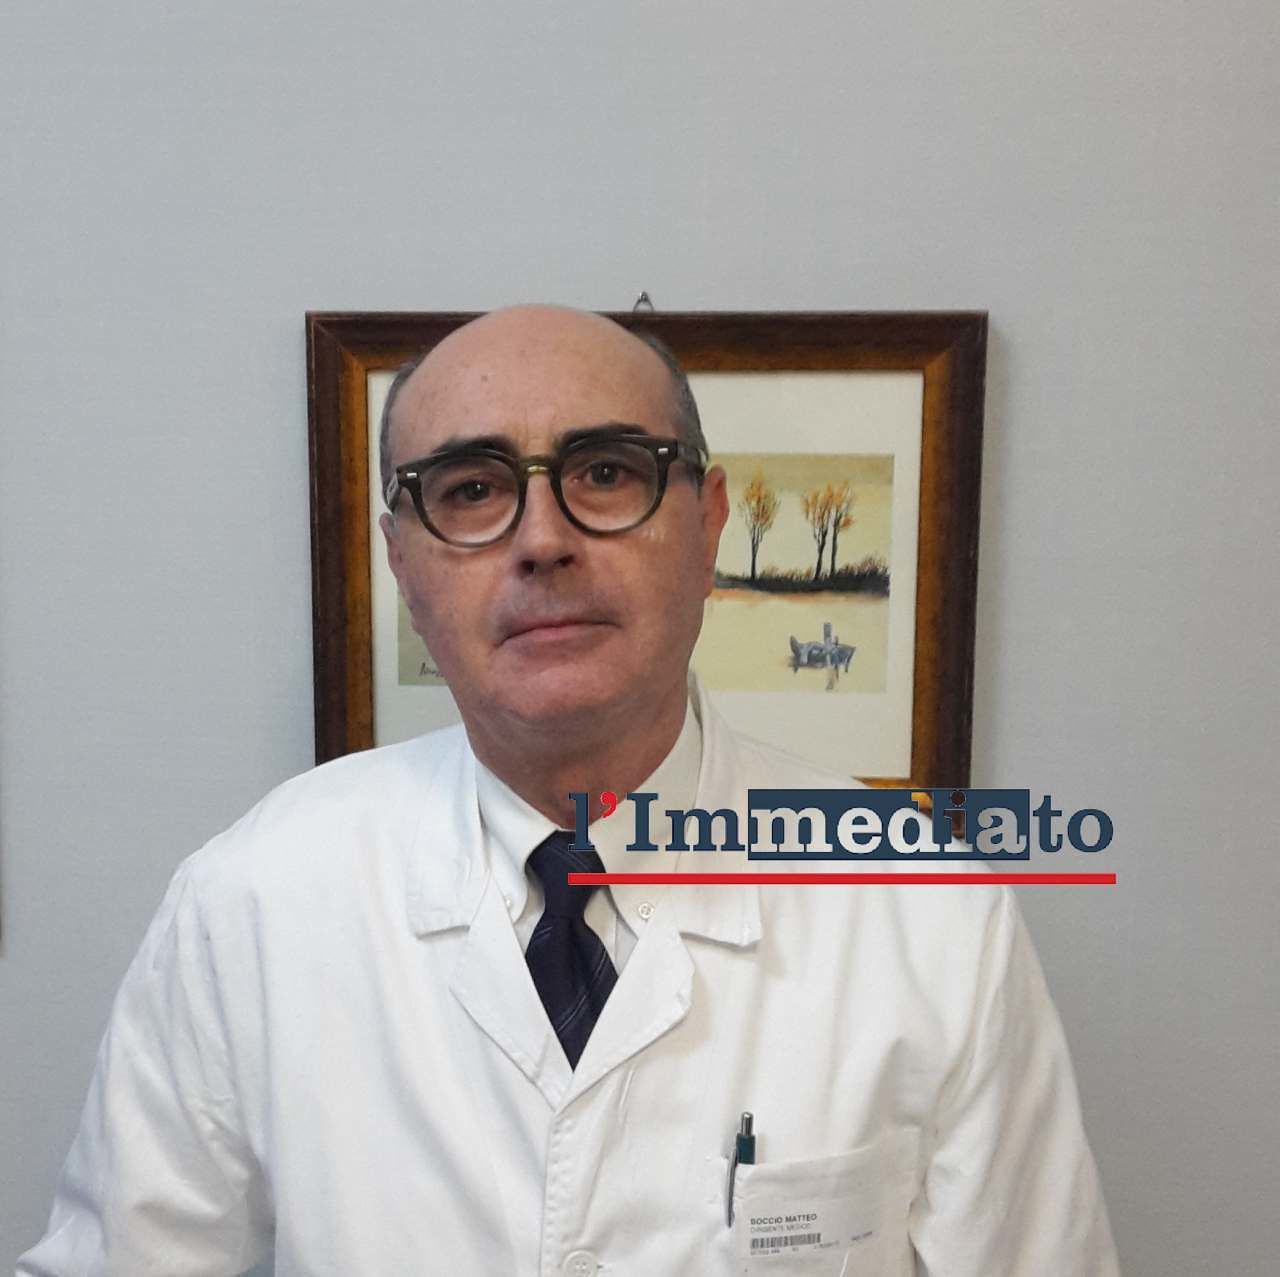 Originario di Sannicandro Garganico, è stato nominato direttore sanitario dell'Asst Lariana